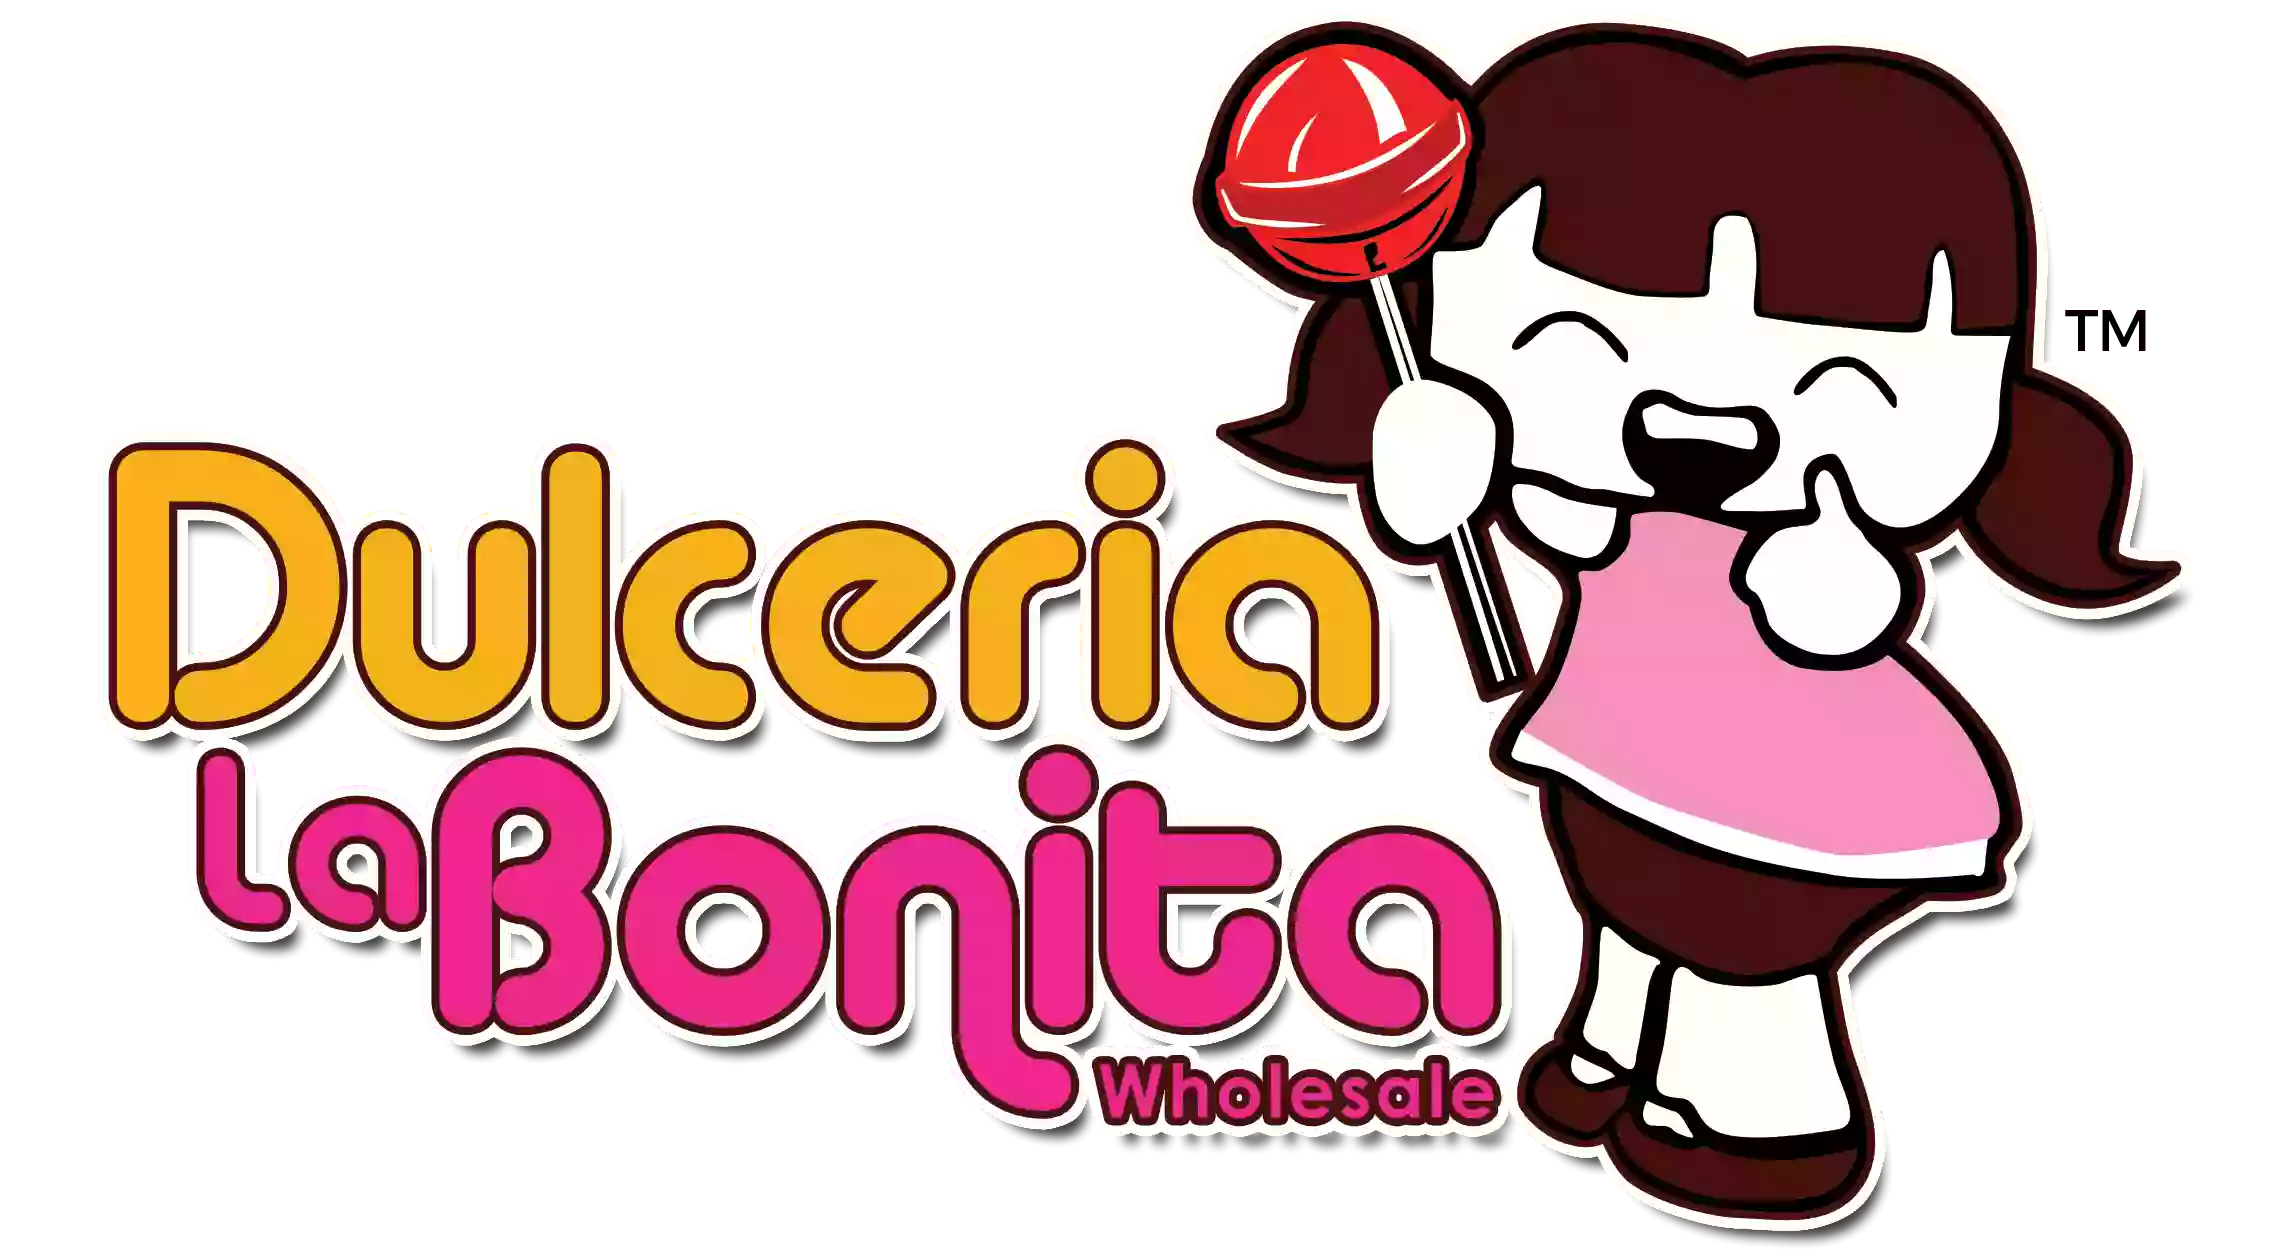 Dulceria La Bonita Wholesale